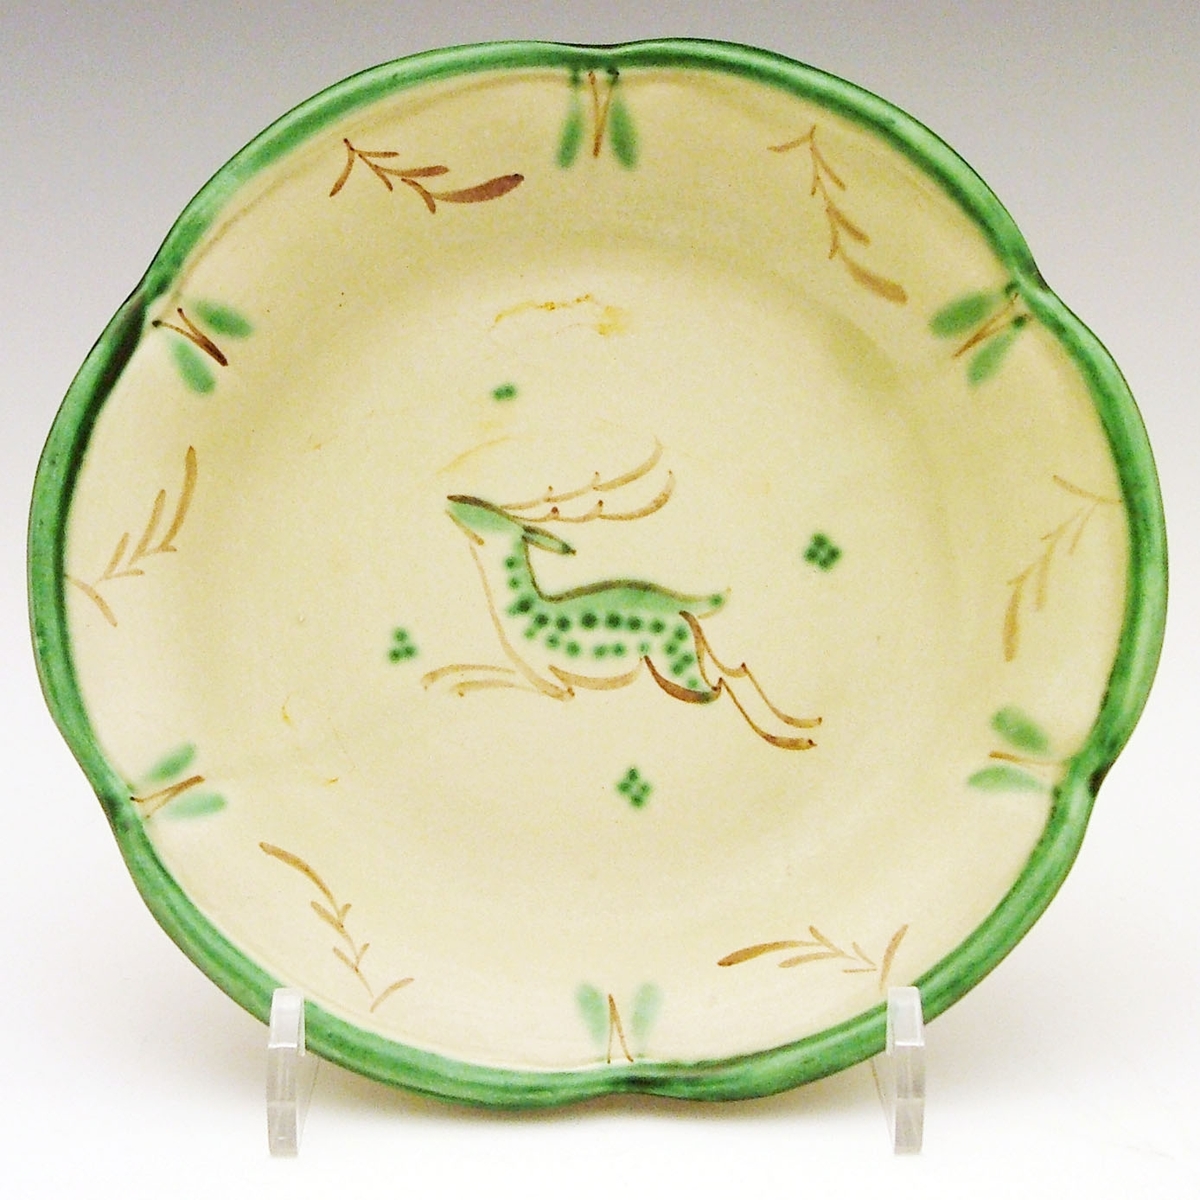 Litet grönglaserat fat med grön och brun handmålad dekor i form av hjortdjur mot ljusare grön botten. Dekoren VA. Tillverkat vid Bo Fajans i Gävle mellan åren 1925-1943 och formgivet av Maggie Wibom.